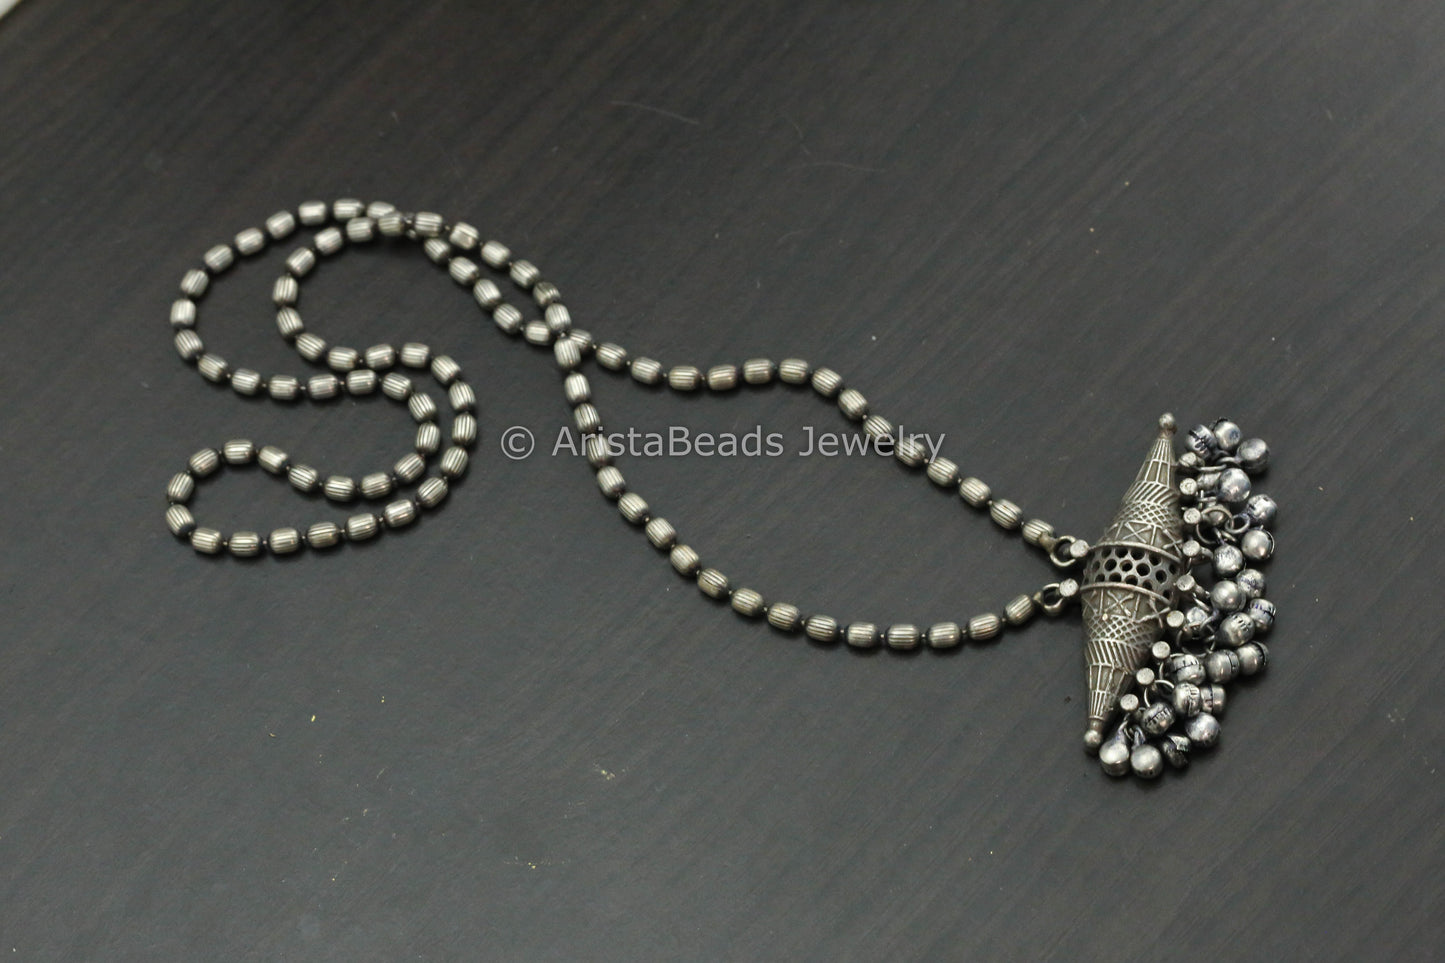 Oxidized Silver Tabeez Necklace